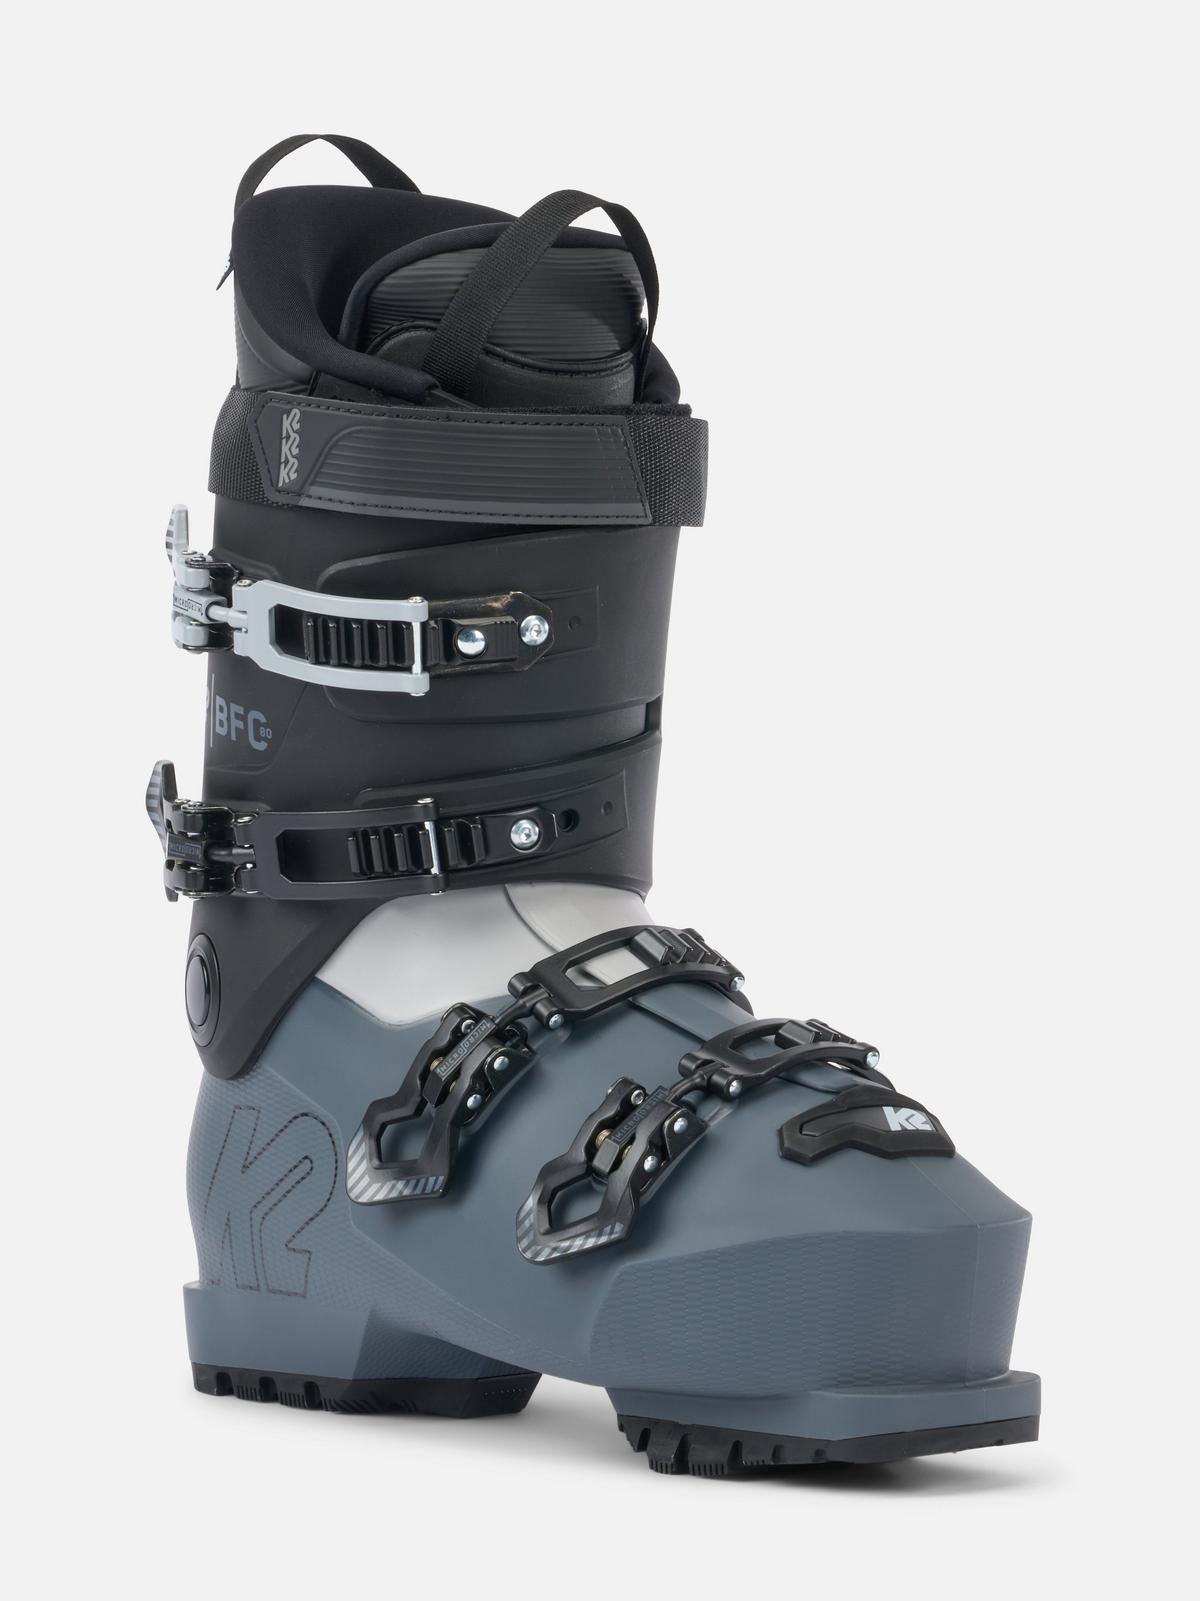 B.F.C. 80 Ski Boots